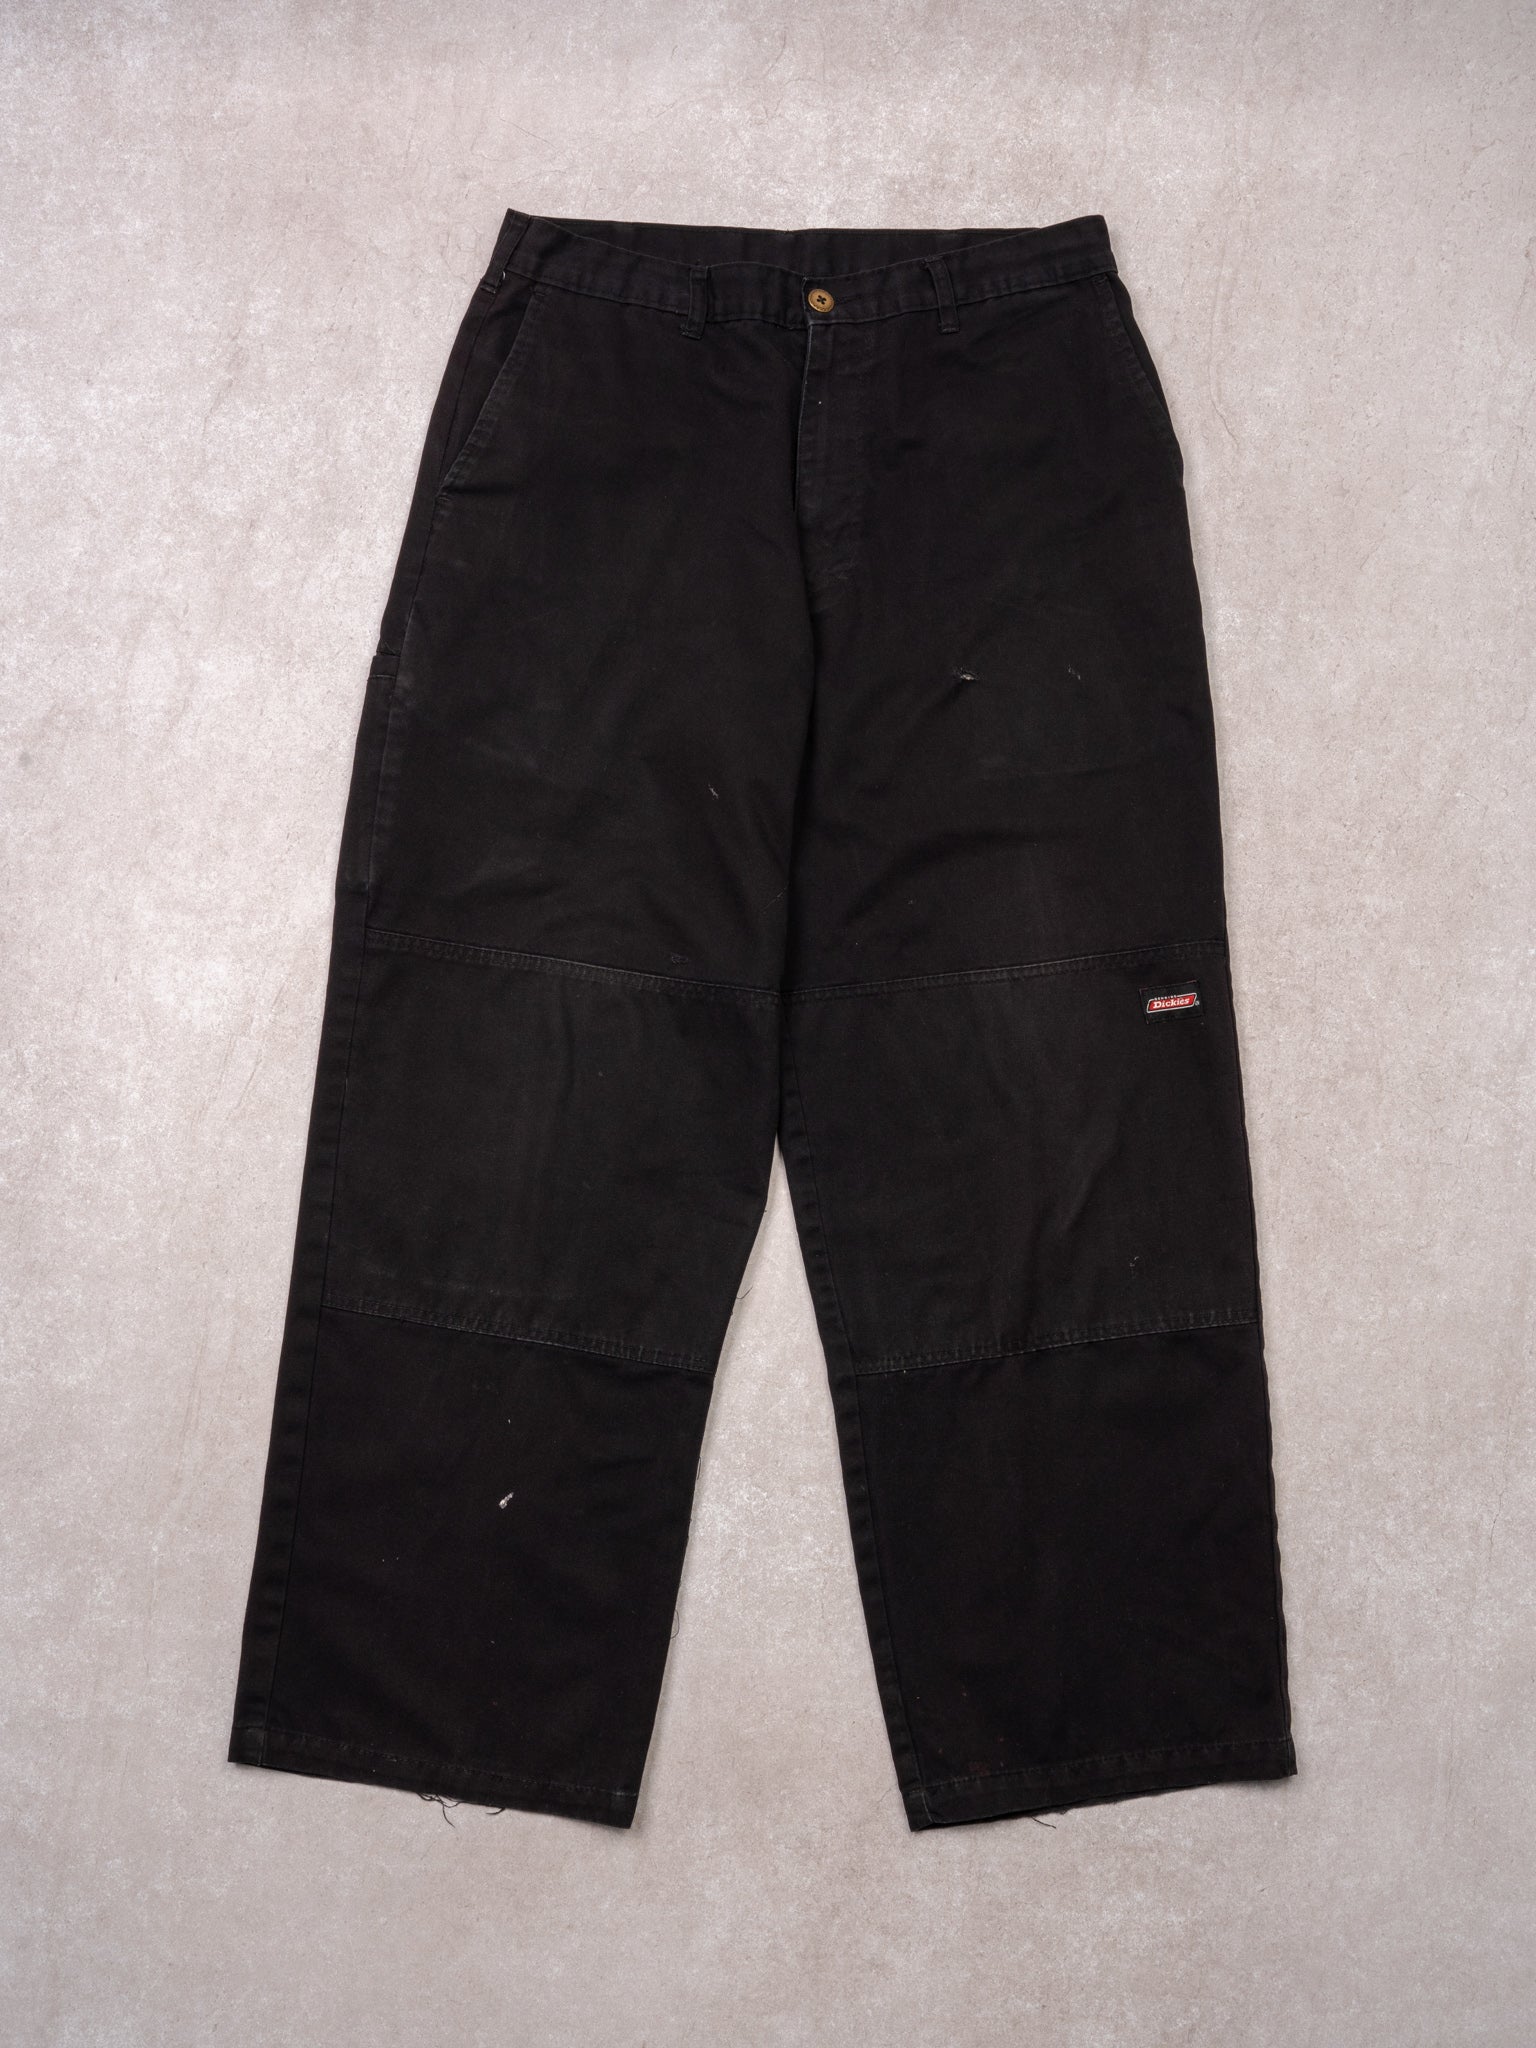 Vintage Black Dickies Double Knee Workwear Pants (32 x 28)